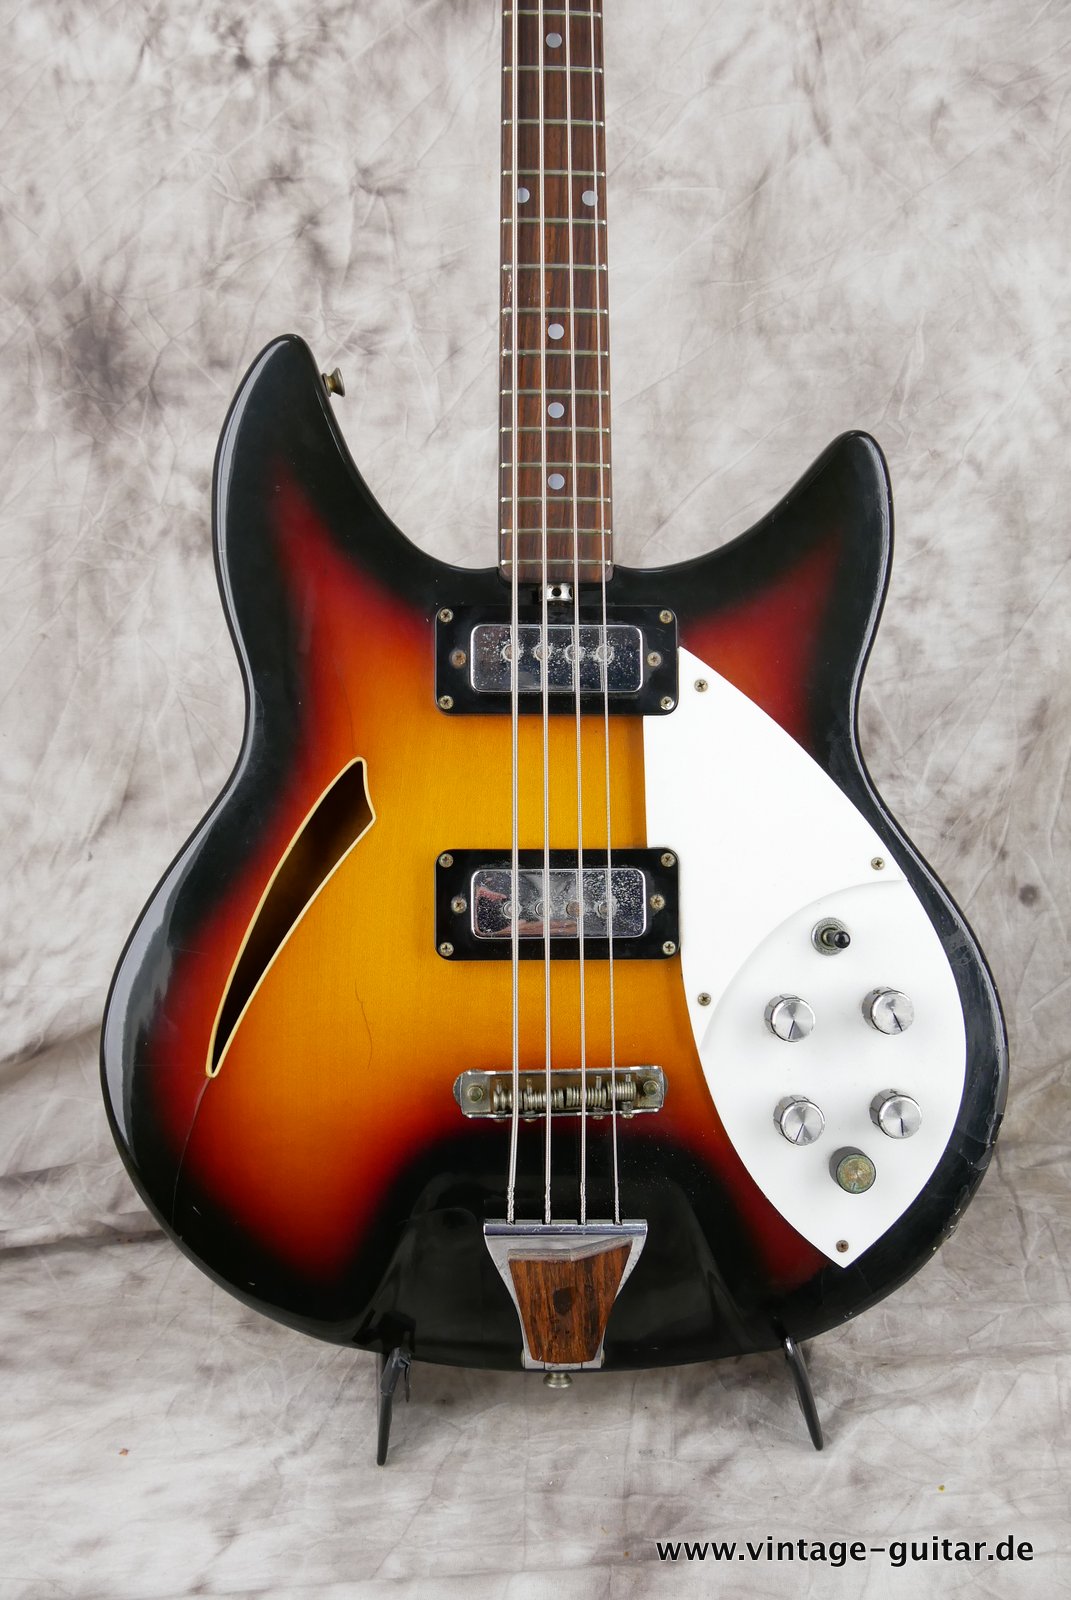 Shaftesbury-Bass-3263-1969-Italy-Eko-made-002.JPG